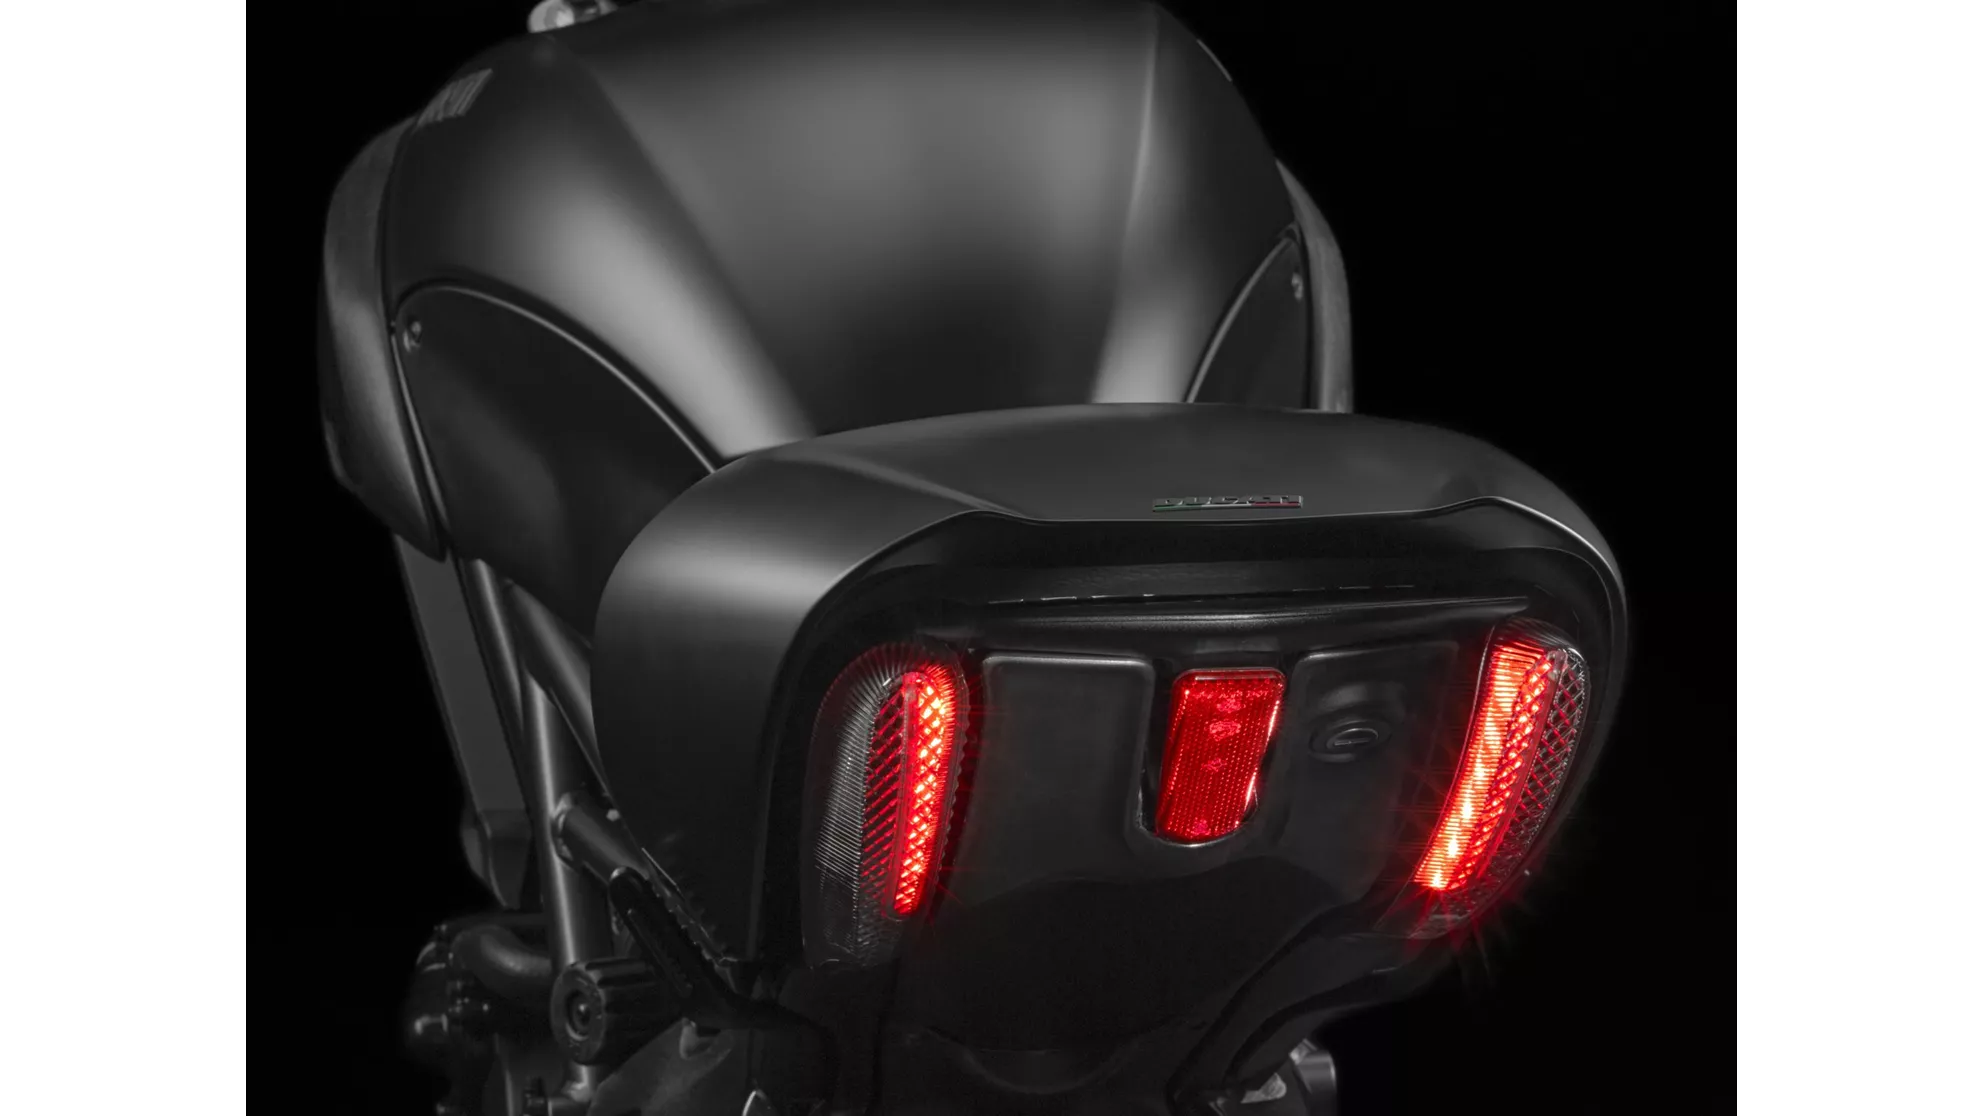 Ducati Diavel 1200 Dark - Image 7